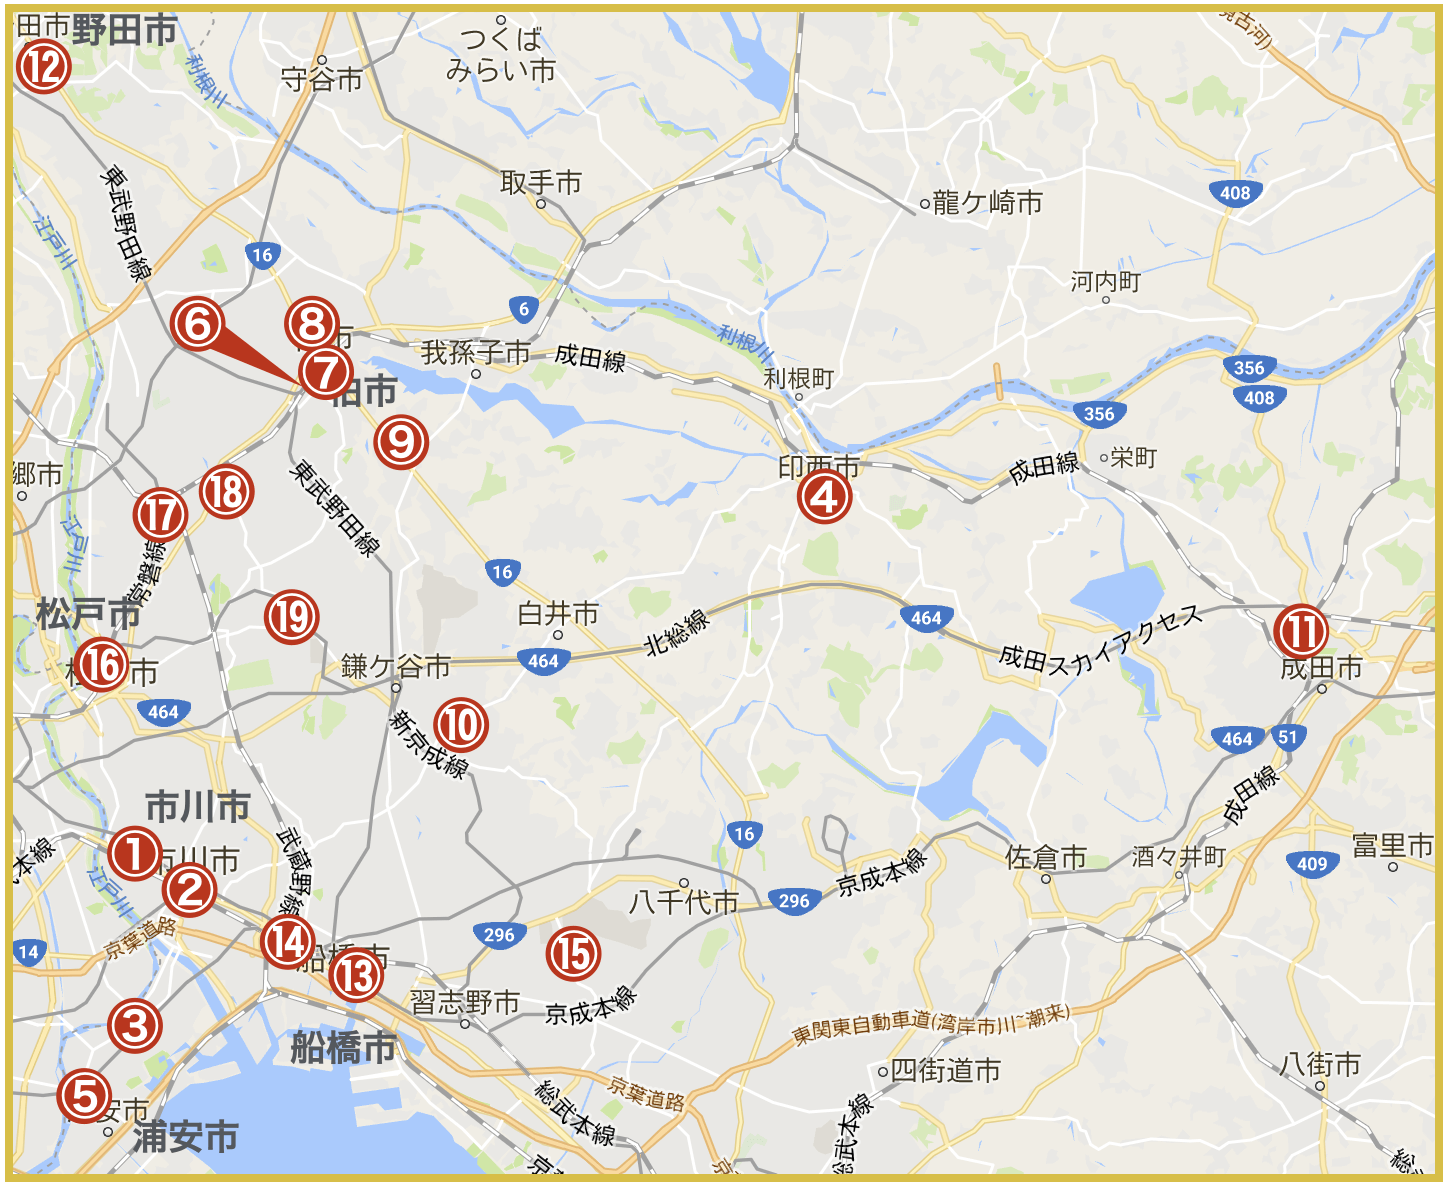 千葉県西地域にあるプロミス店舗・ATMの位置（2020年版）